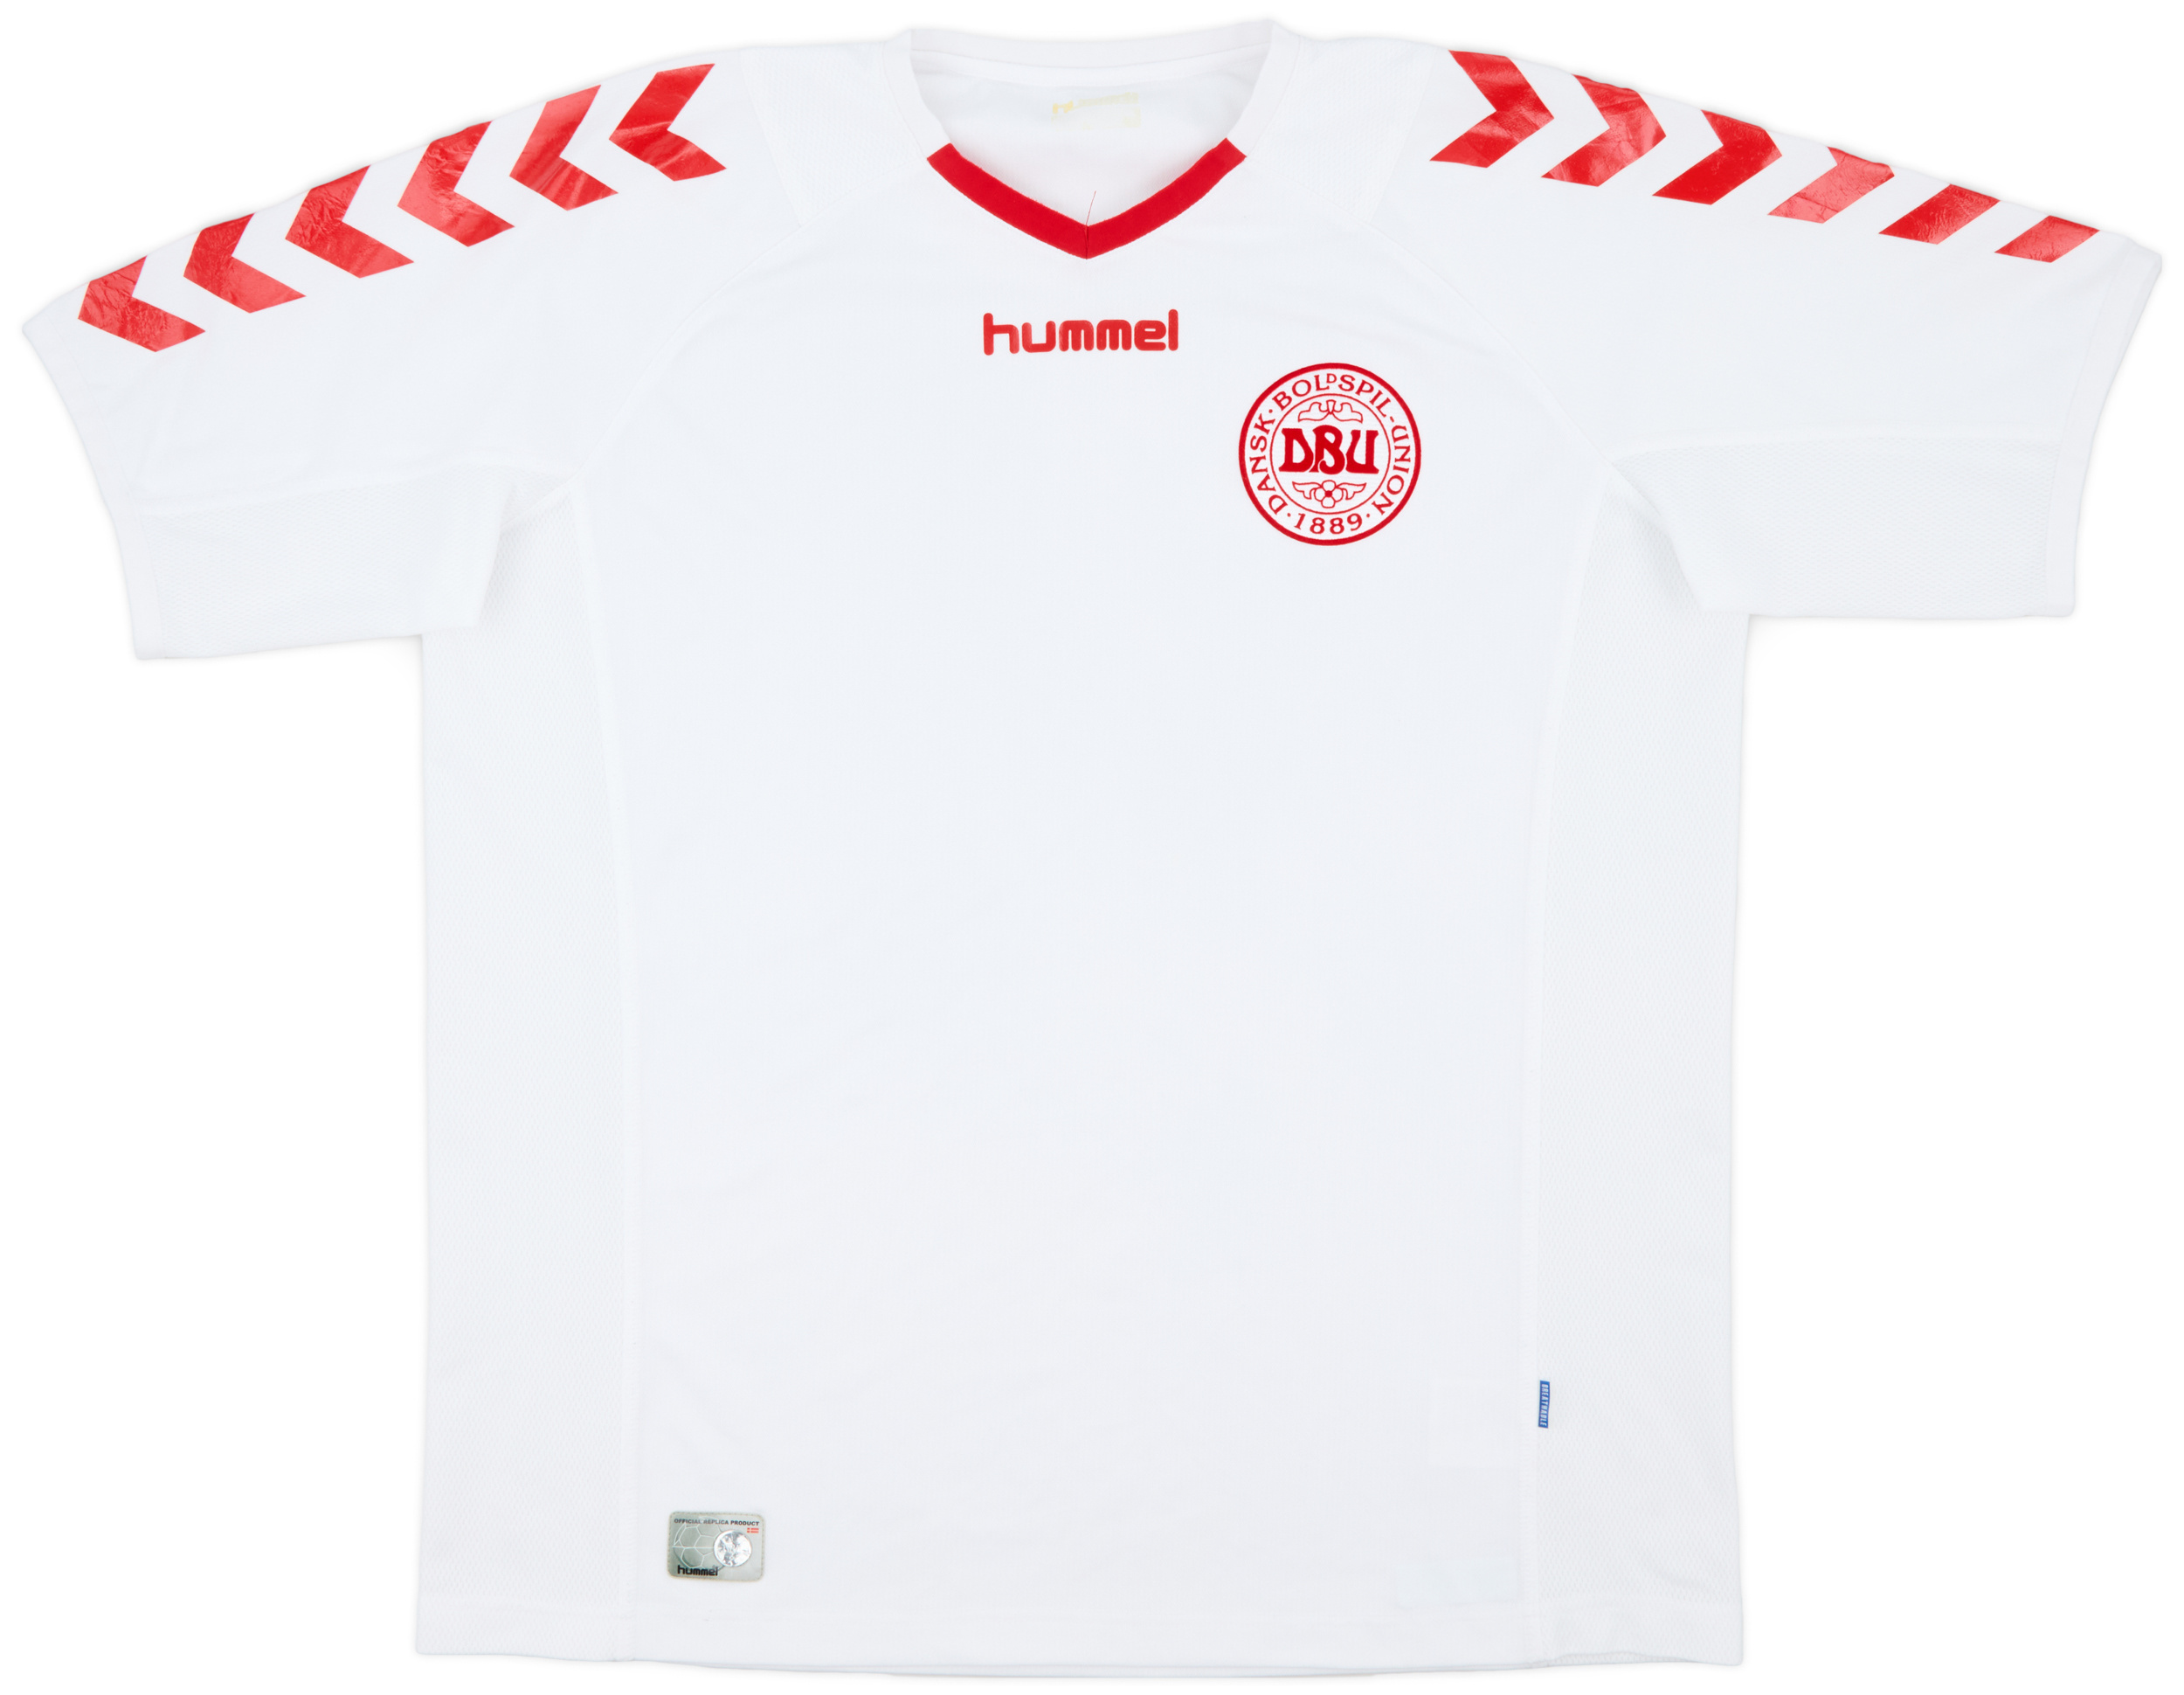 2003-04 Denmark Away Shirt - 8/10 - ()